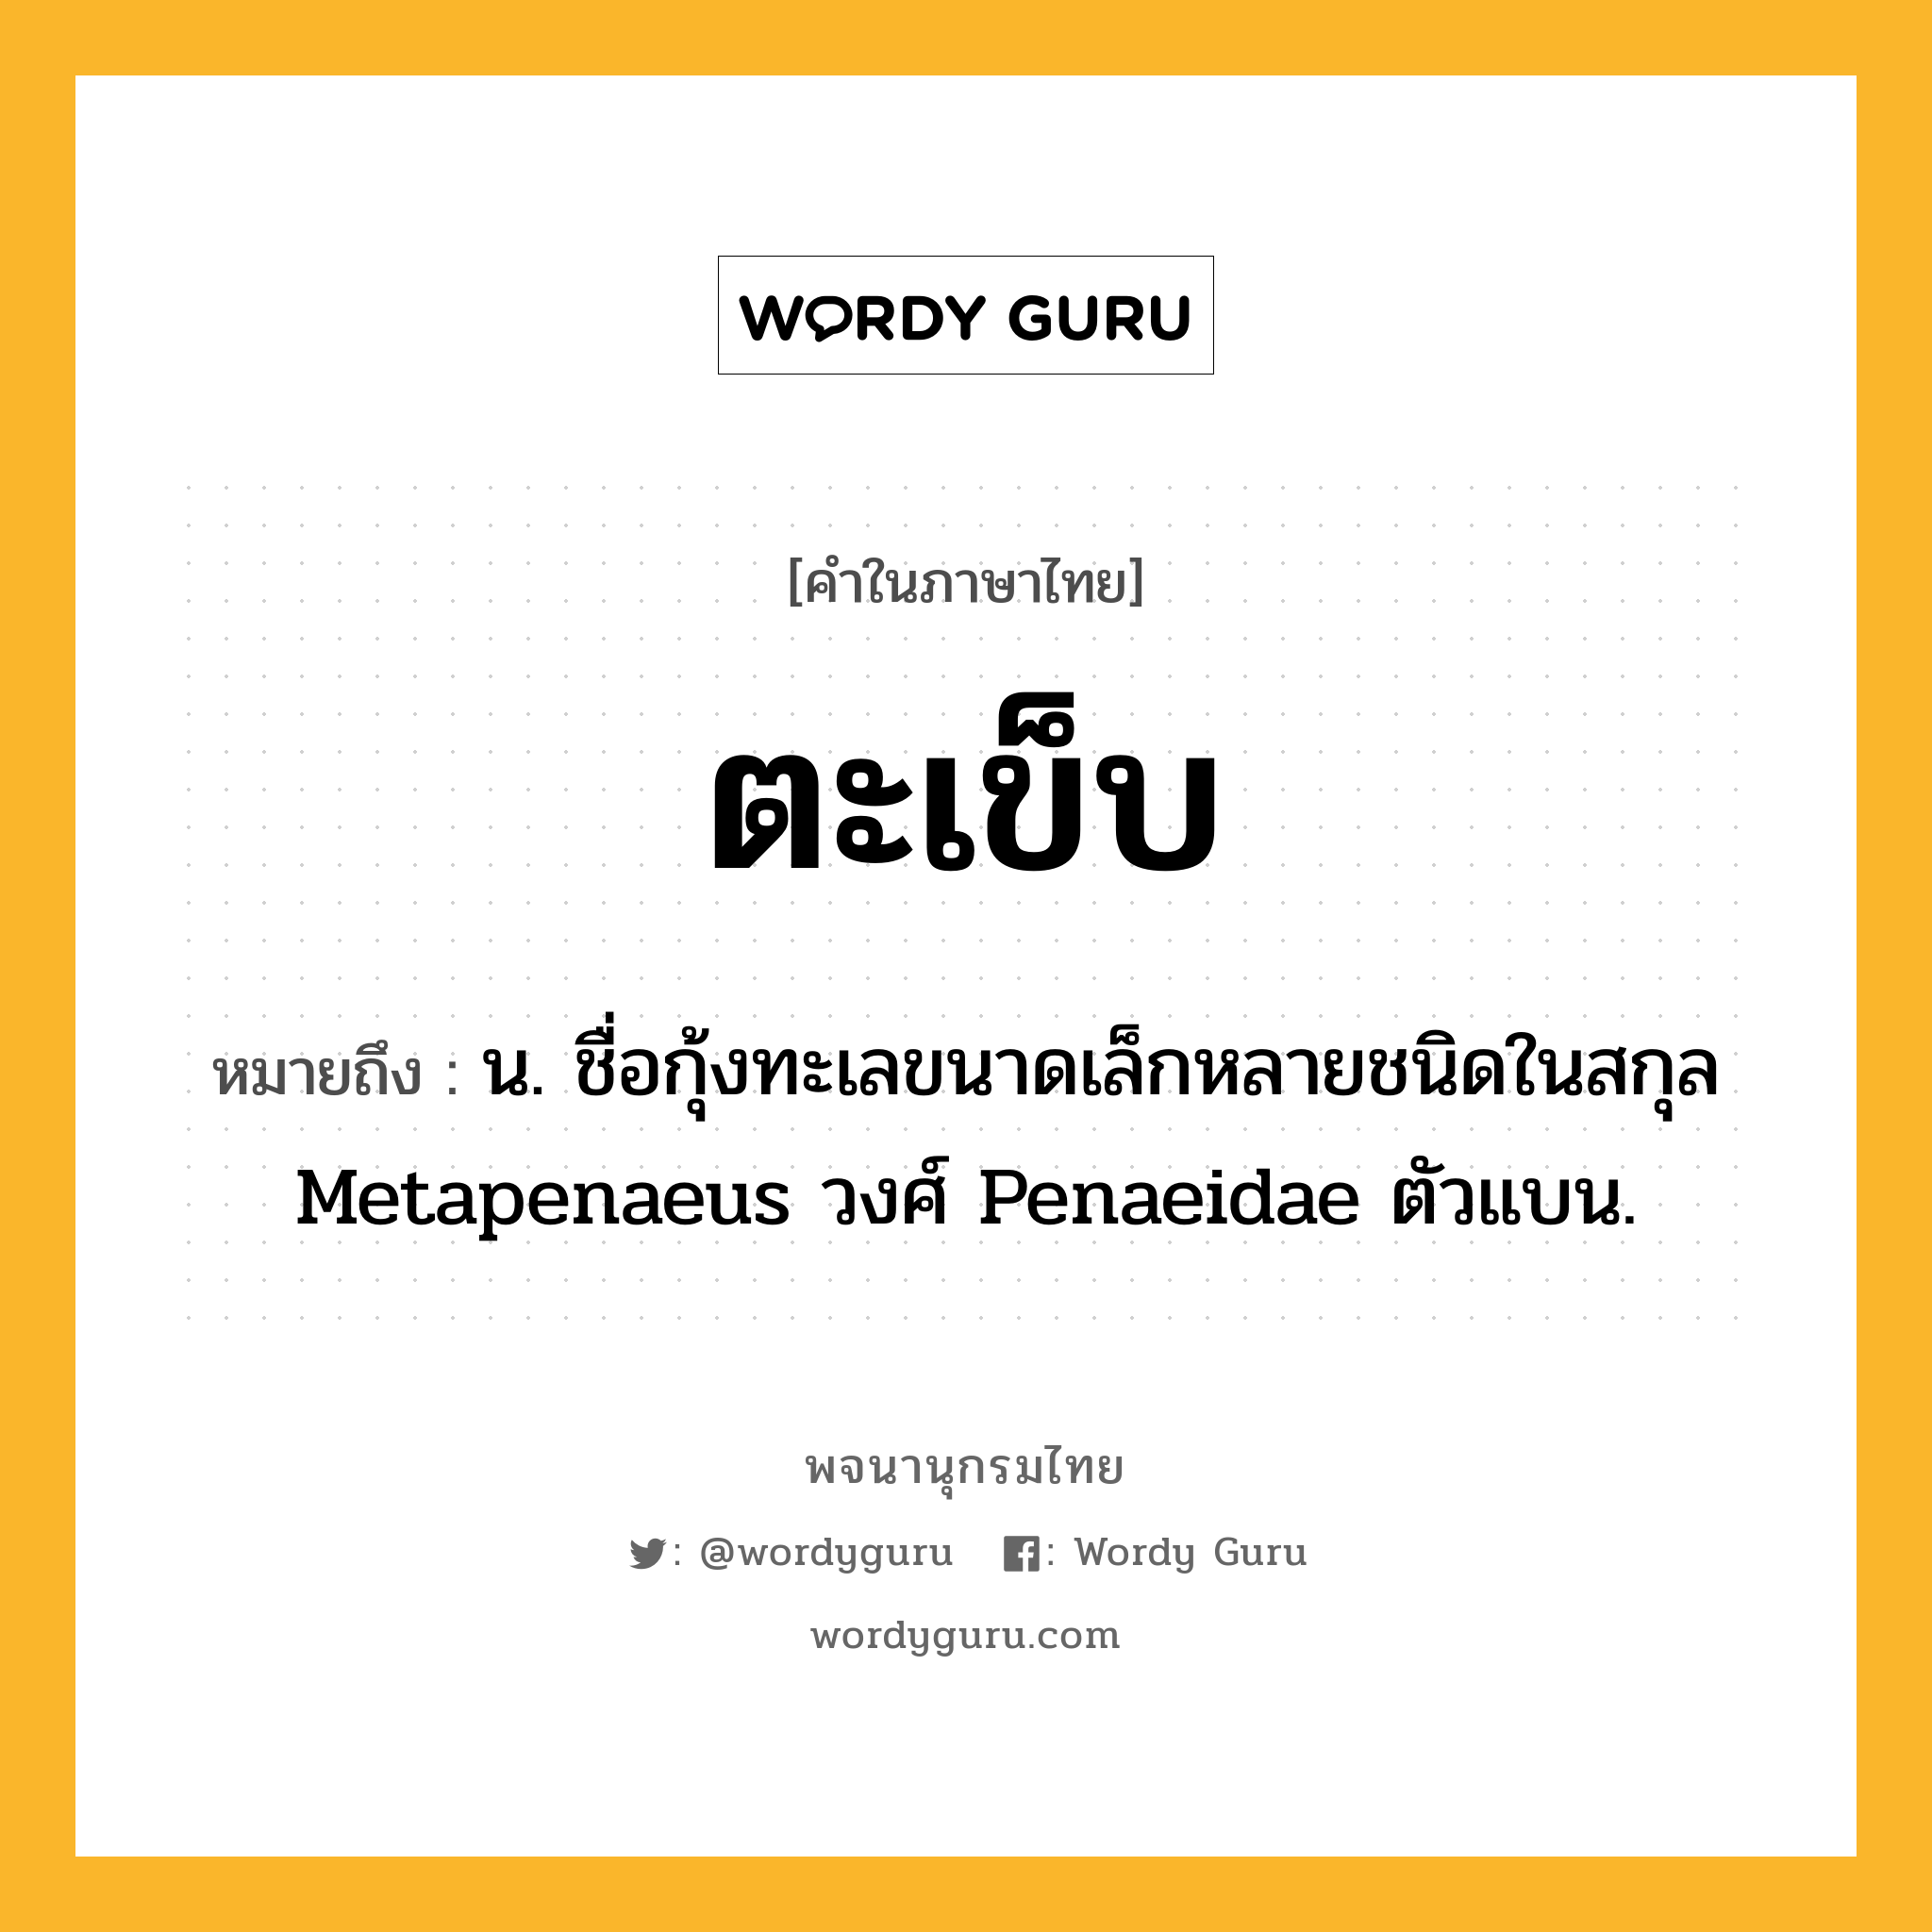 ตะเข็บ ความหมาย หมายถึงอะไร?, คำในภาษาไทย ตะเข็บ หมายถึง น. ชื่อกุ้งทะเลขนาดเล็กหลายชนิดในสกุล Metapenaeus วงศ์ Penaeidae ตัวแบน.